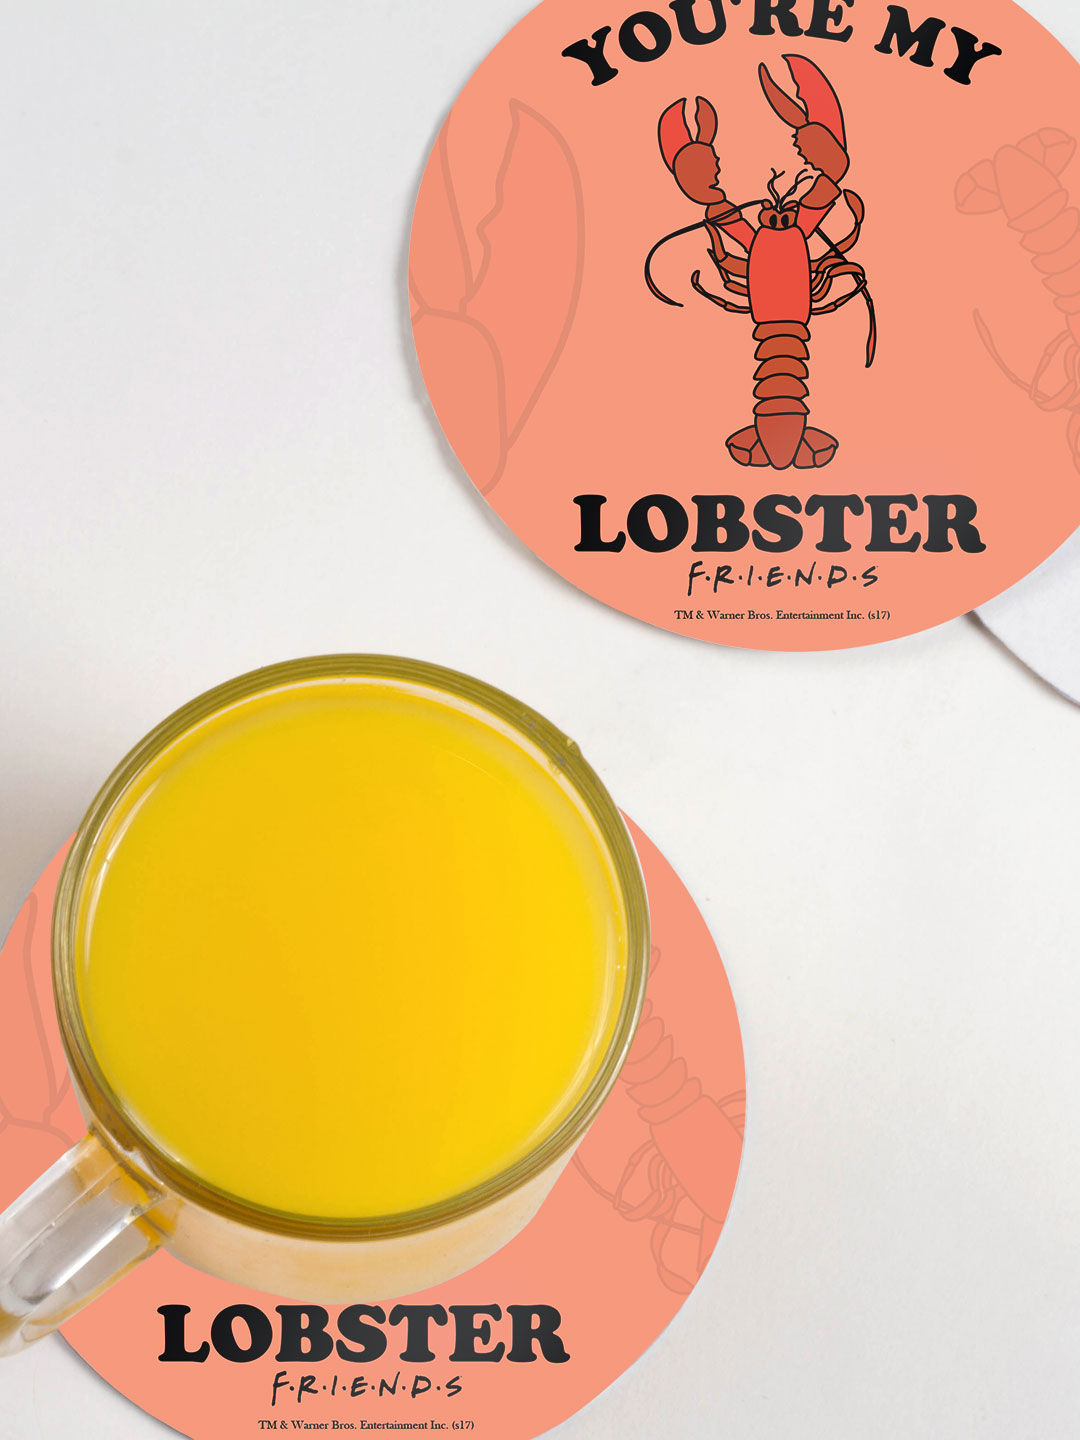 Valentine Lobster - Circular Coaster